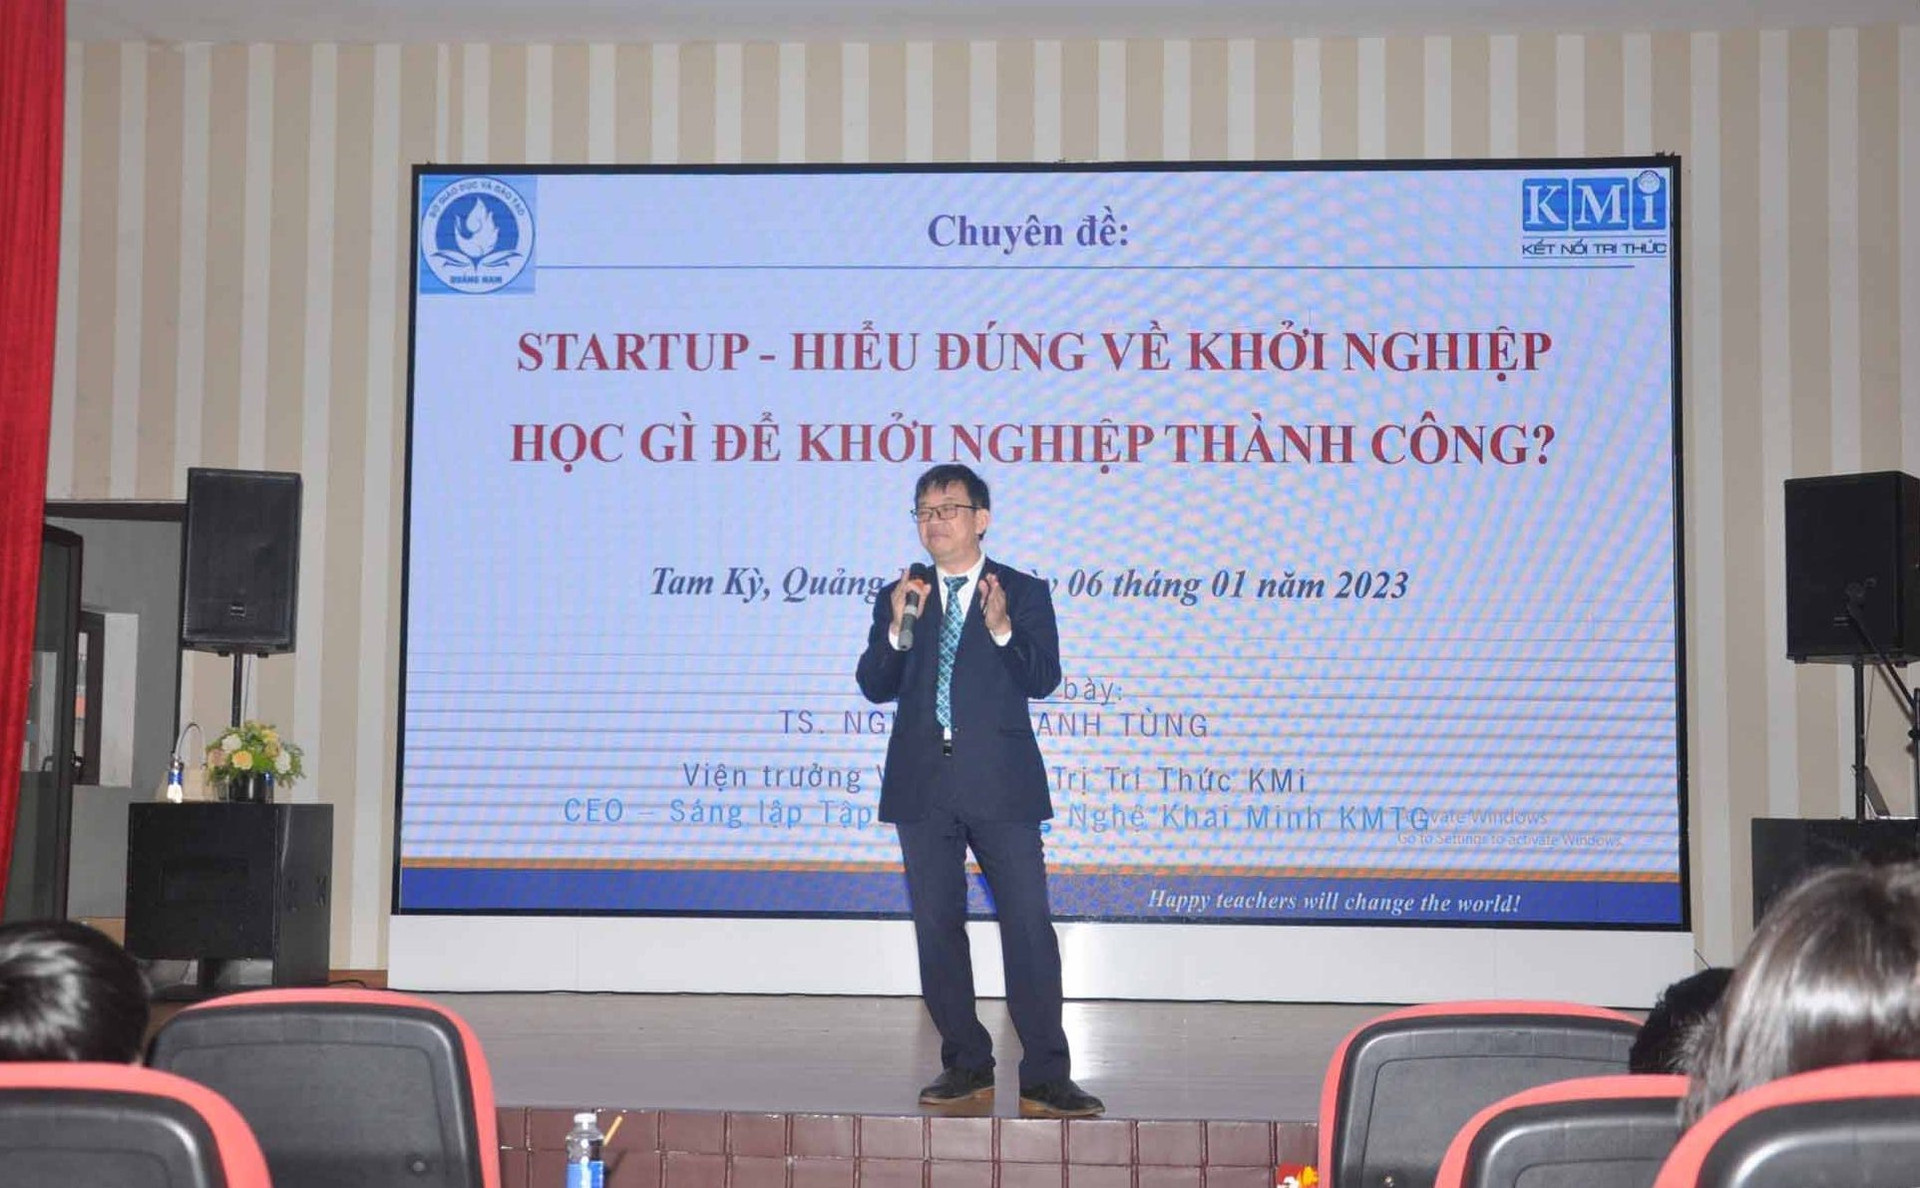 TS. Nguyễn Thanh Tùng - Viện trưởng Viện Quản trị tri thức KMi trình bày con đường khởi nghiệp sáng tạo. Ảnh: X.P